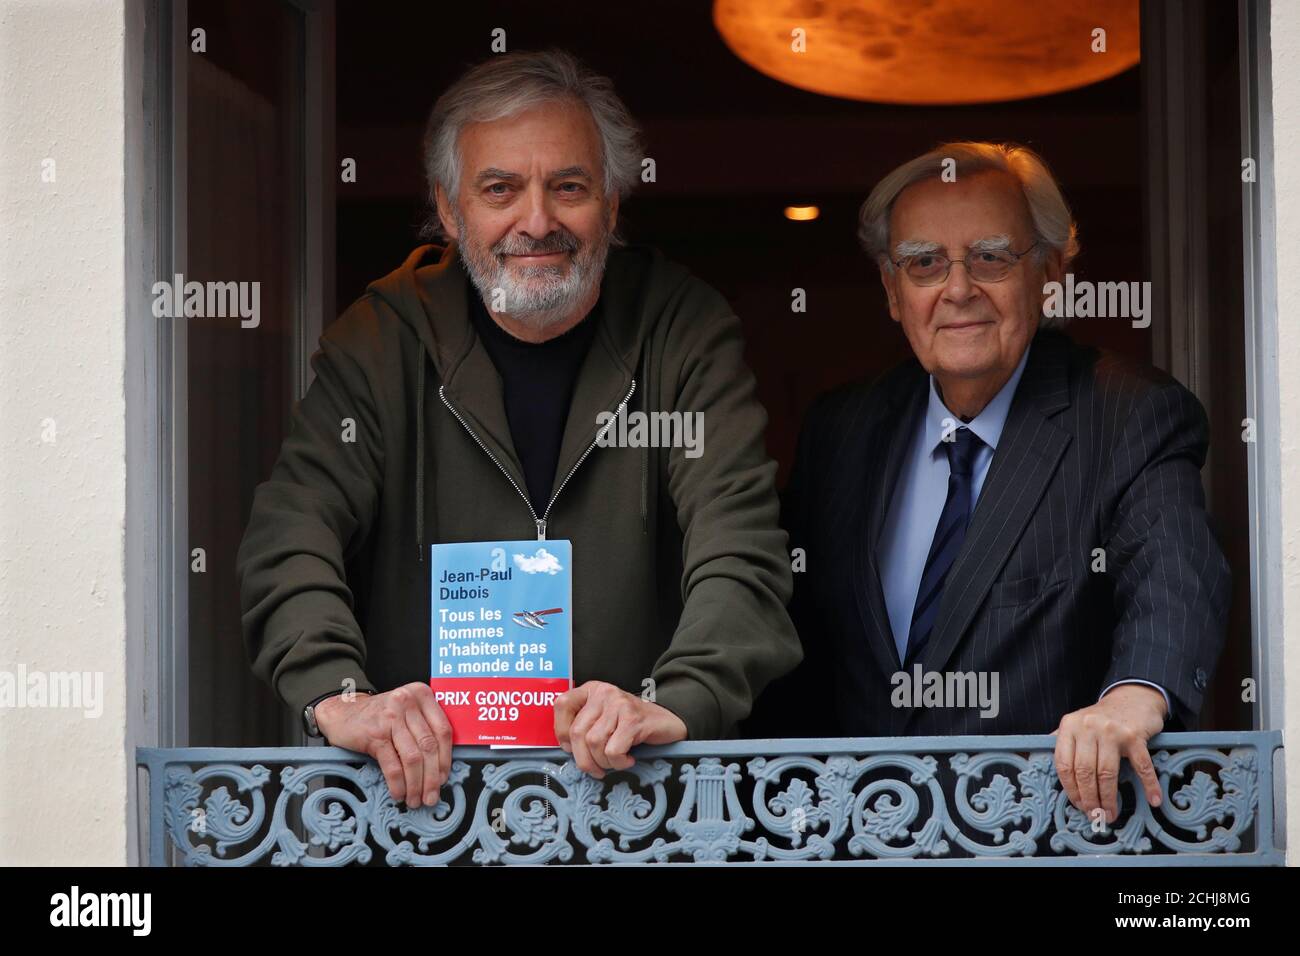 Der französische Schriftsteller Jean-Paul Dubois posiert neben dem  Jurymitglied Bernard Pivot im Restaurant Drouant, nachdem er den  französischen Literaturpreis Prix Goncourt für seinen Roman "Tous les  hommes n'habitent pas le monde de